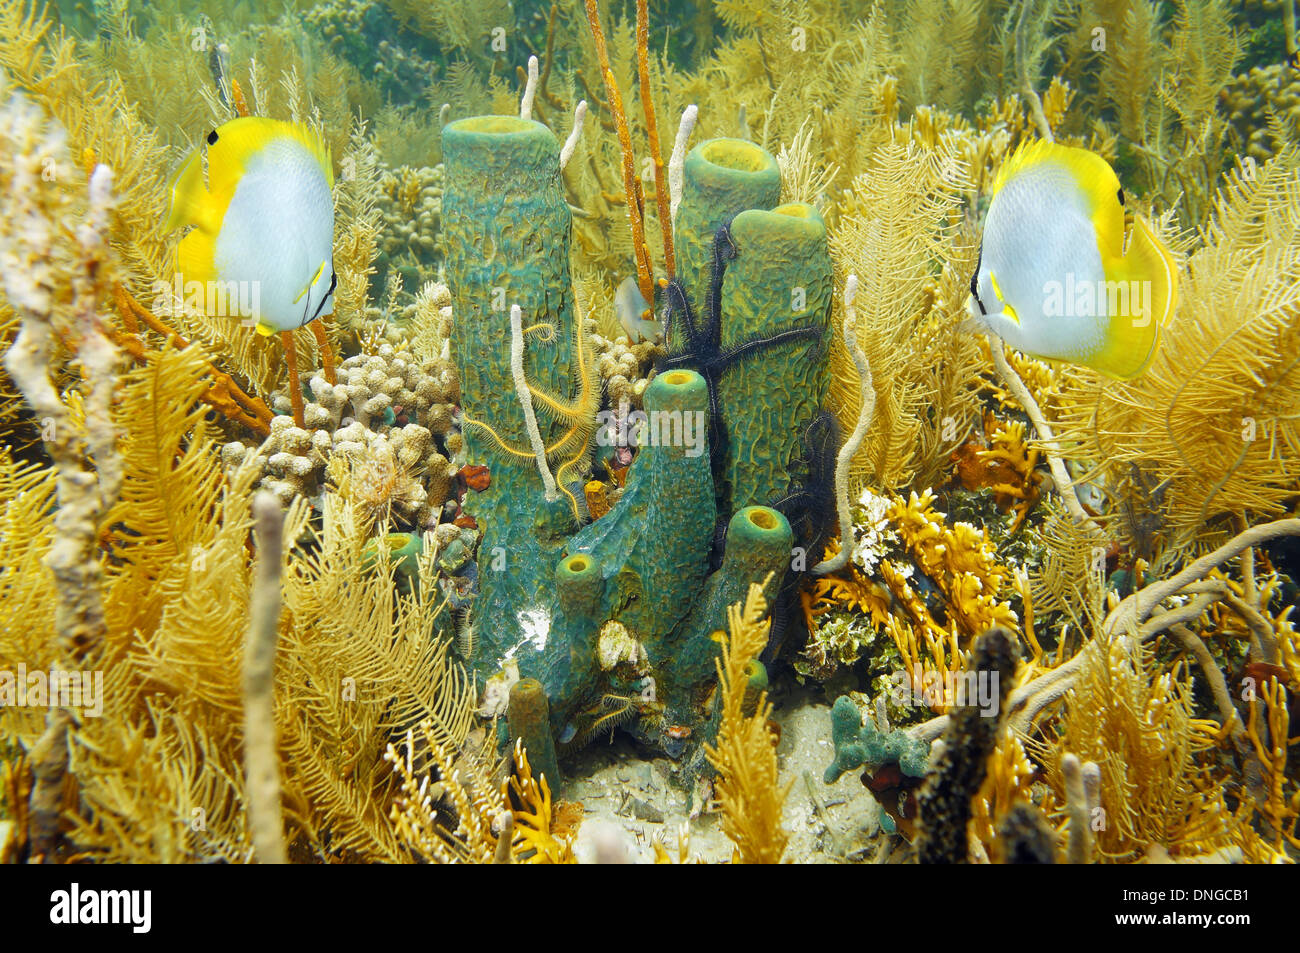 Unterwasser Meerestiere Verzweigung Rohr Schwamm im Korallengarten mit  Schwamm Schlangenstern und Falterfische, Karibik Stockfotografie - Alamy